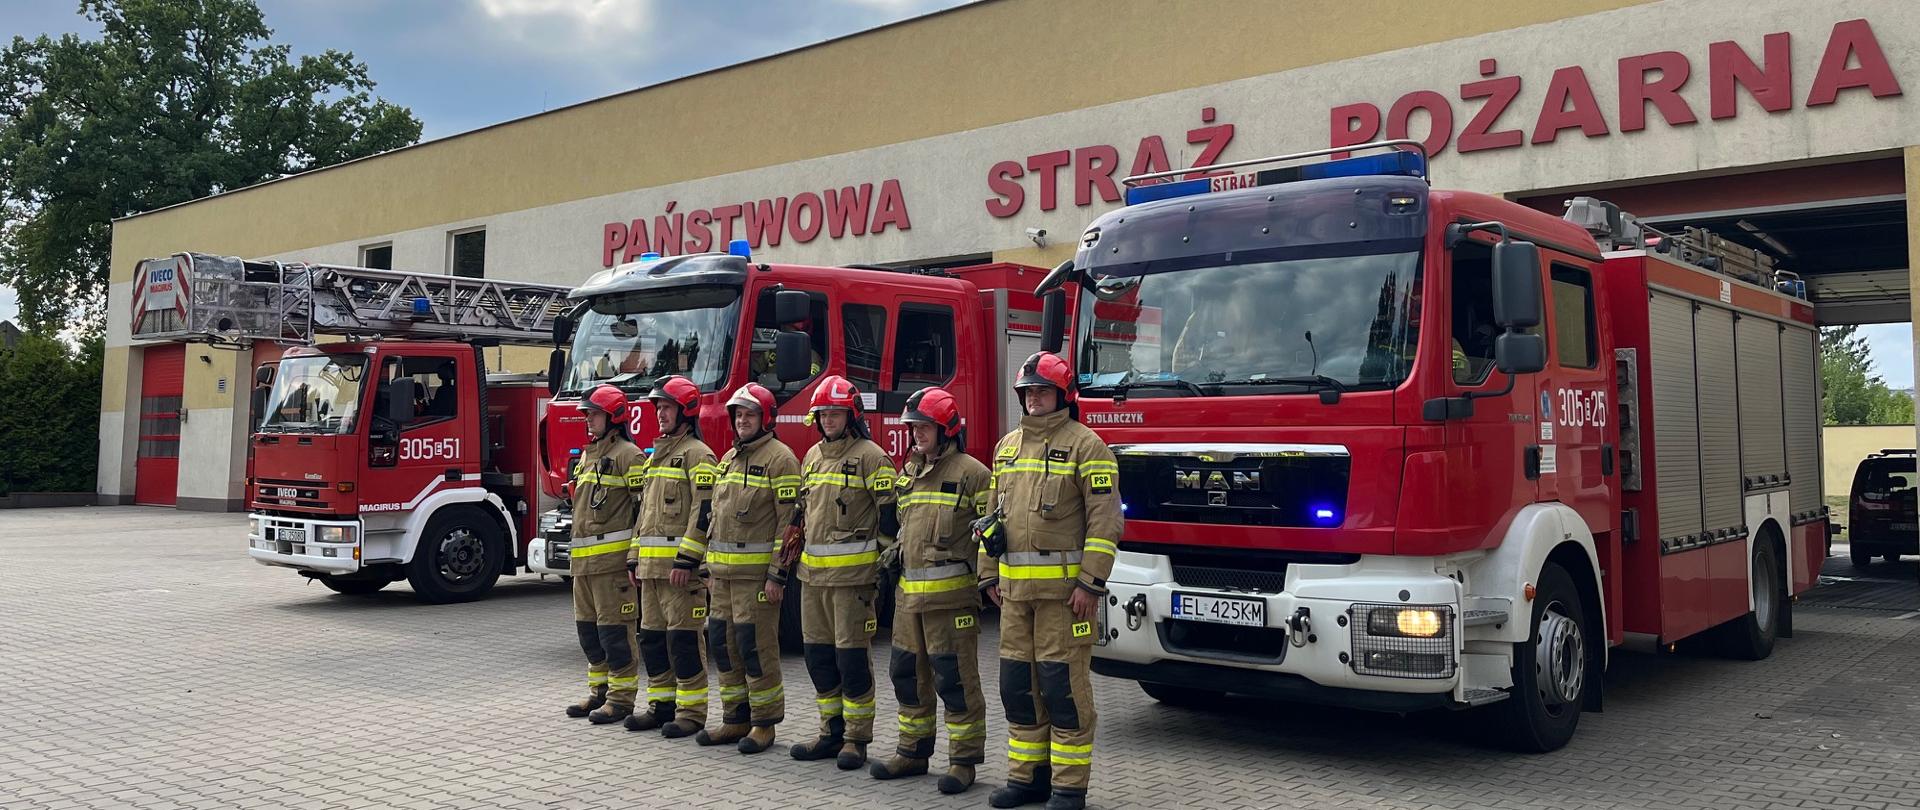 Strażacy stojący w rzędzie na baczność przed samochodami pożarniczymi oddają hołd powstańcom warszawskim